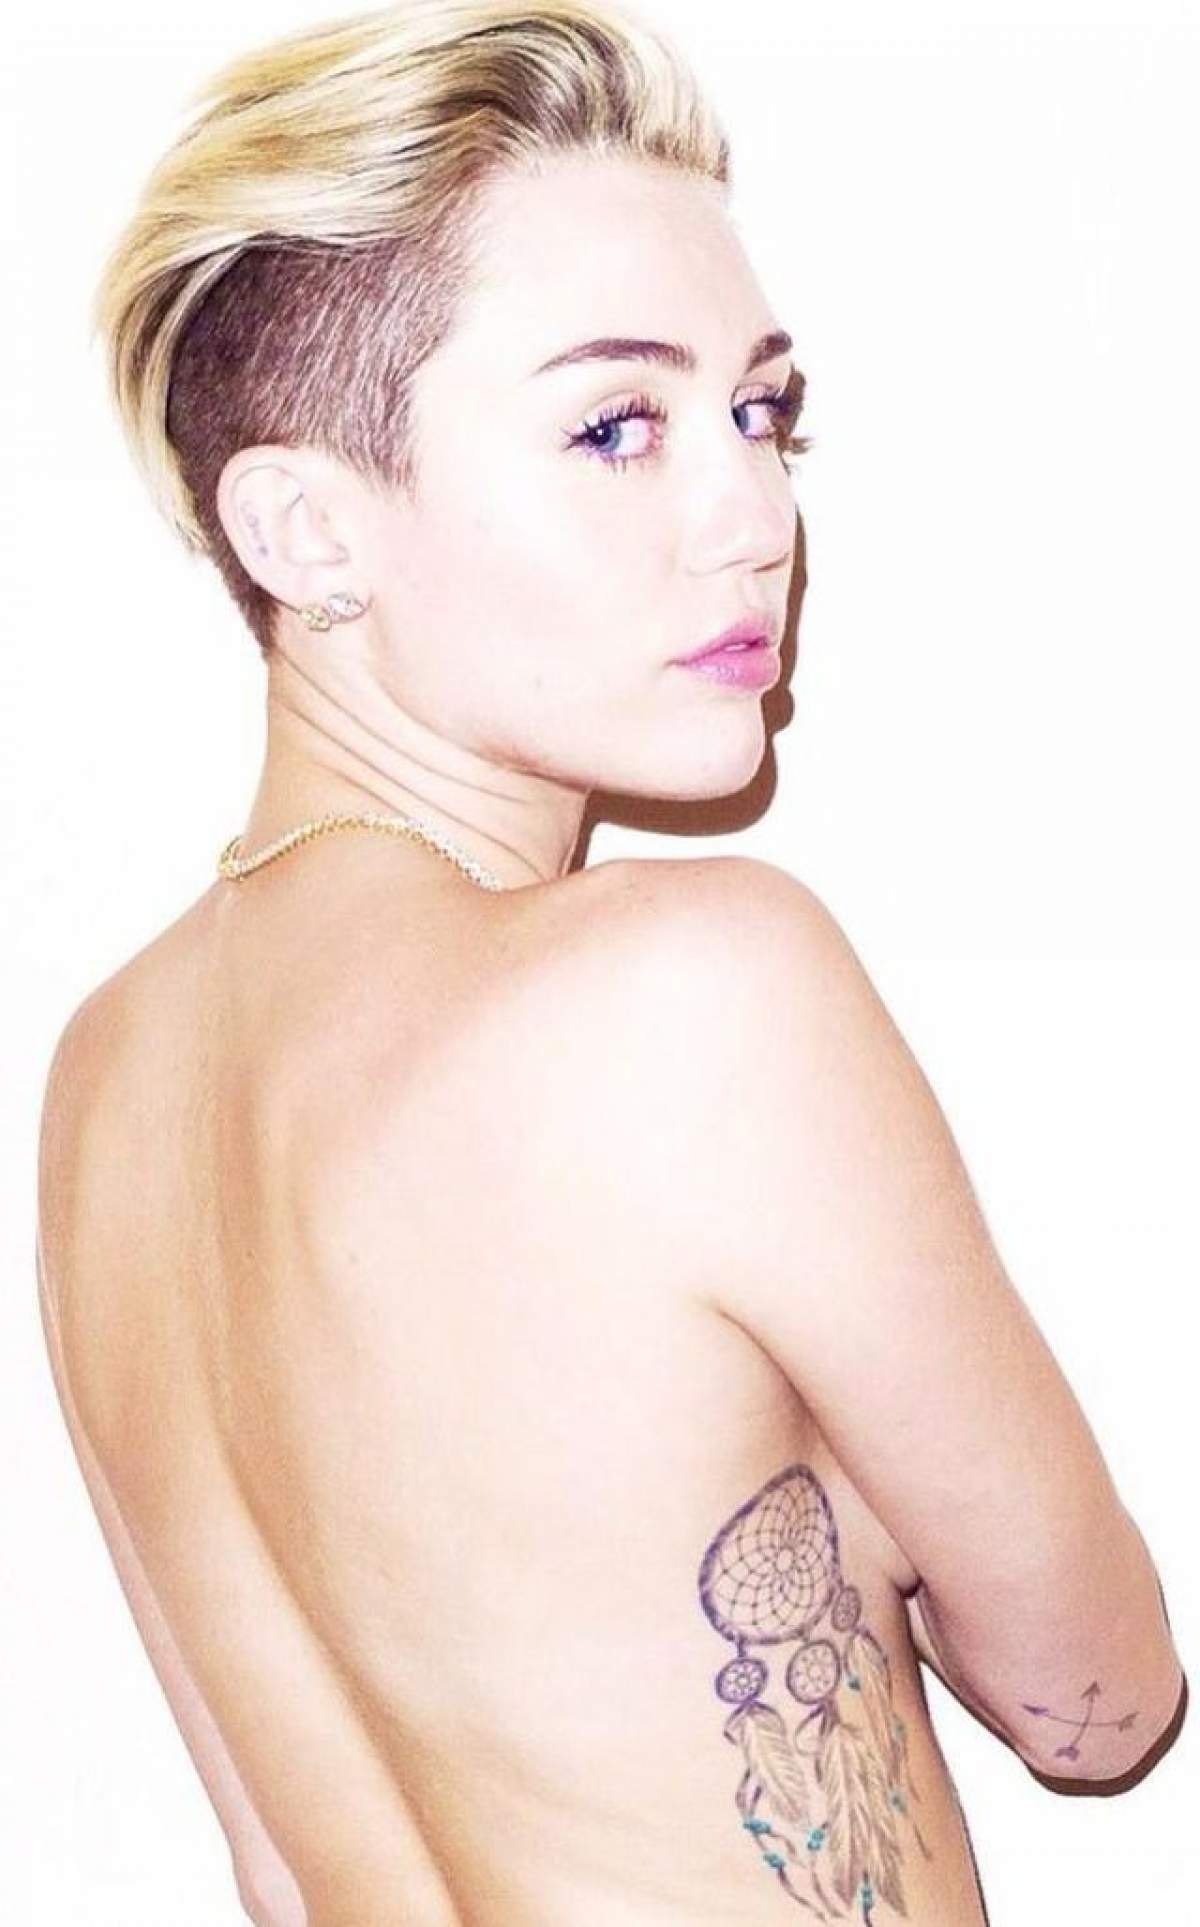 Cu picioarele desfăcute şi cu vânătăi pe fund, Miley Cyrus a încercat să fie sexy, însă nu i-a ieşit!